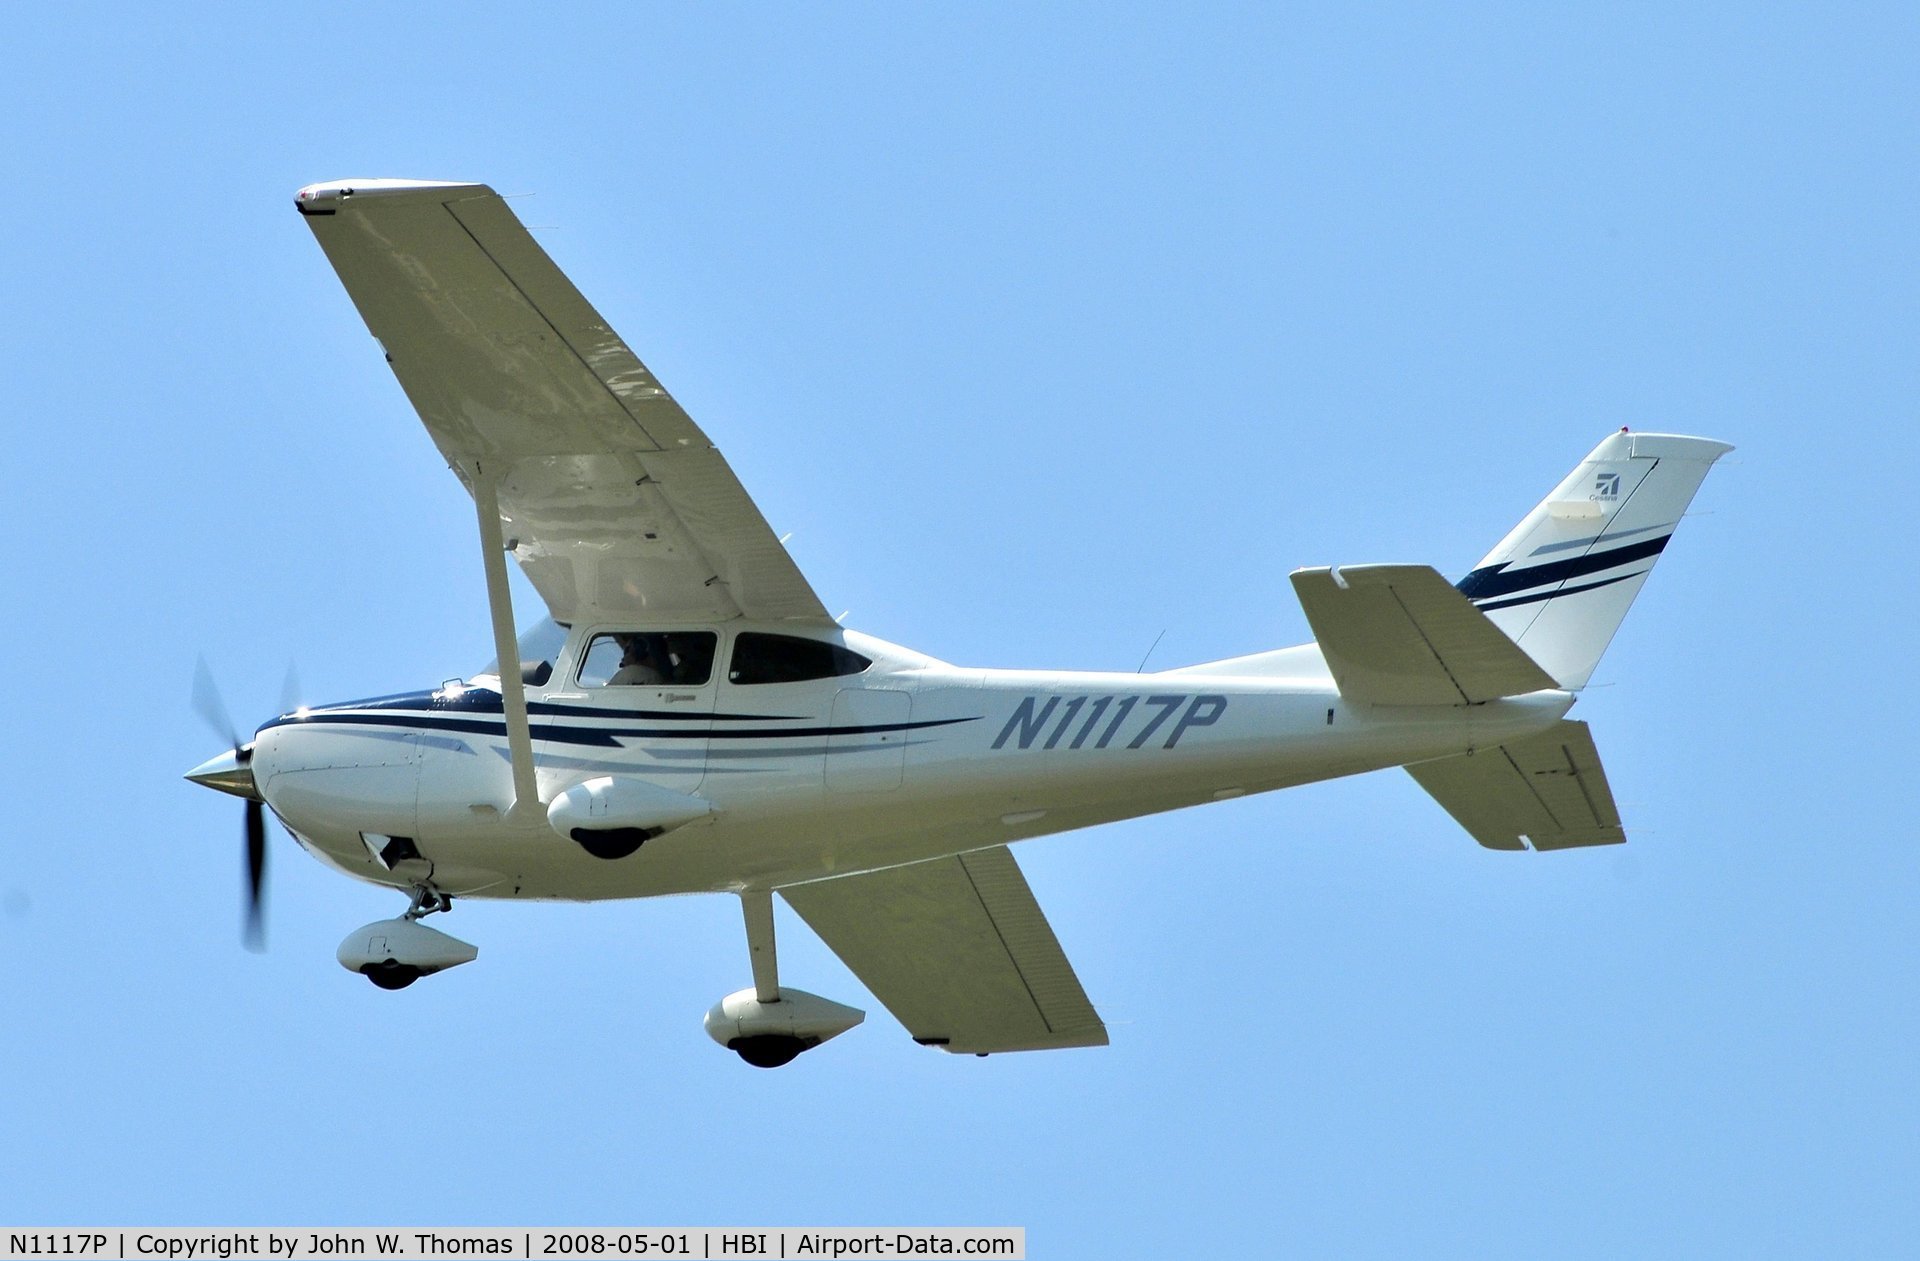 N1117P, 2005 Cessna 182T Skylane C/N 18281580, Departing runway 21